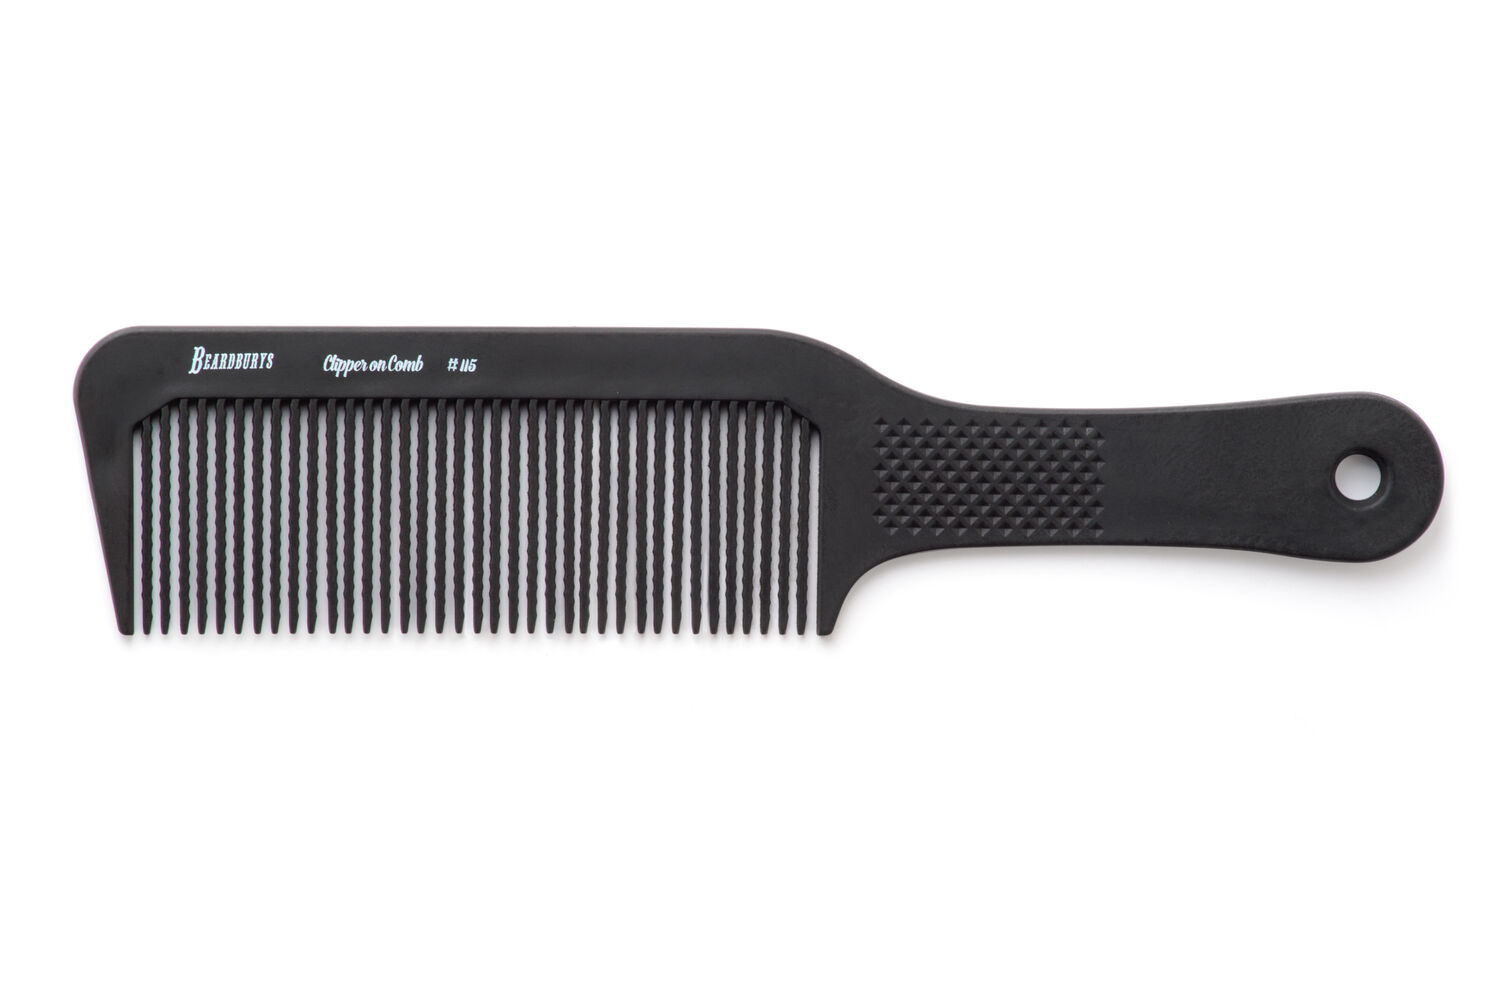 Beardburys clipper comb (Scherkamm)